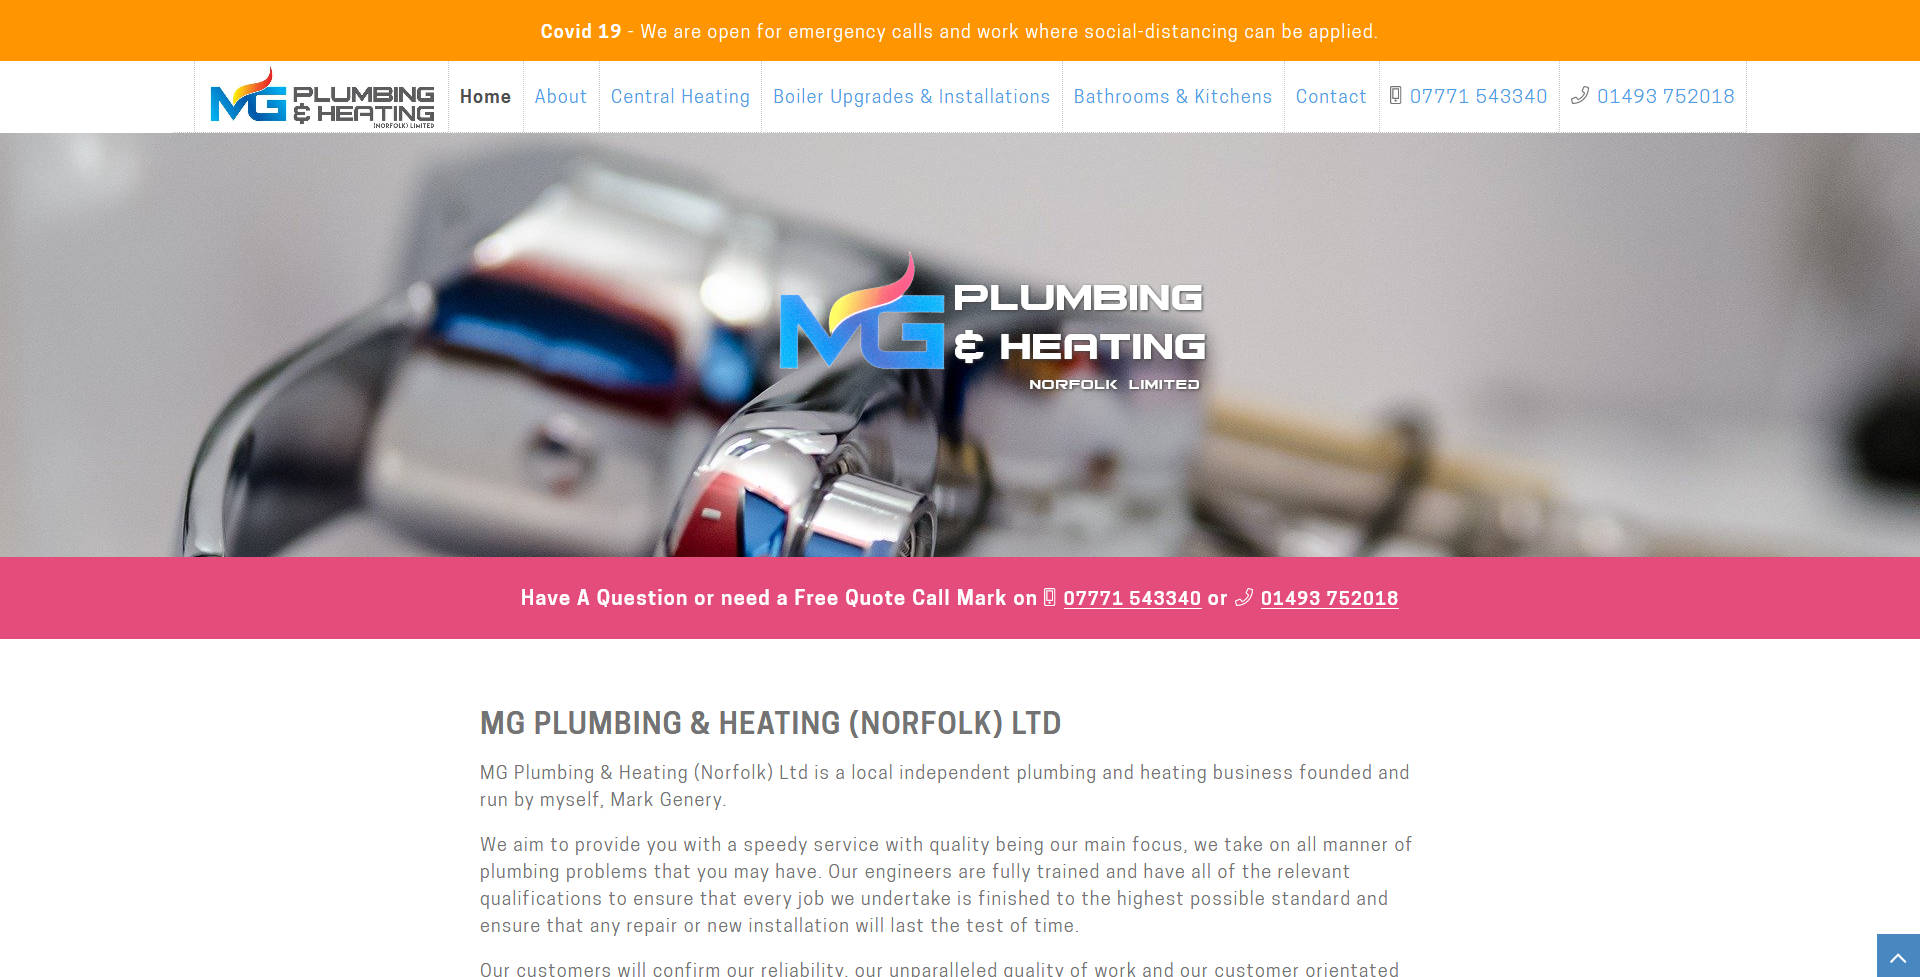 MG Plumbing & Heating Ltd website frontpage